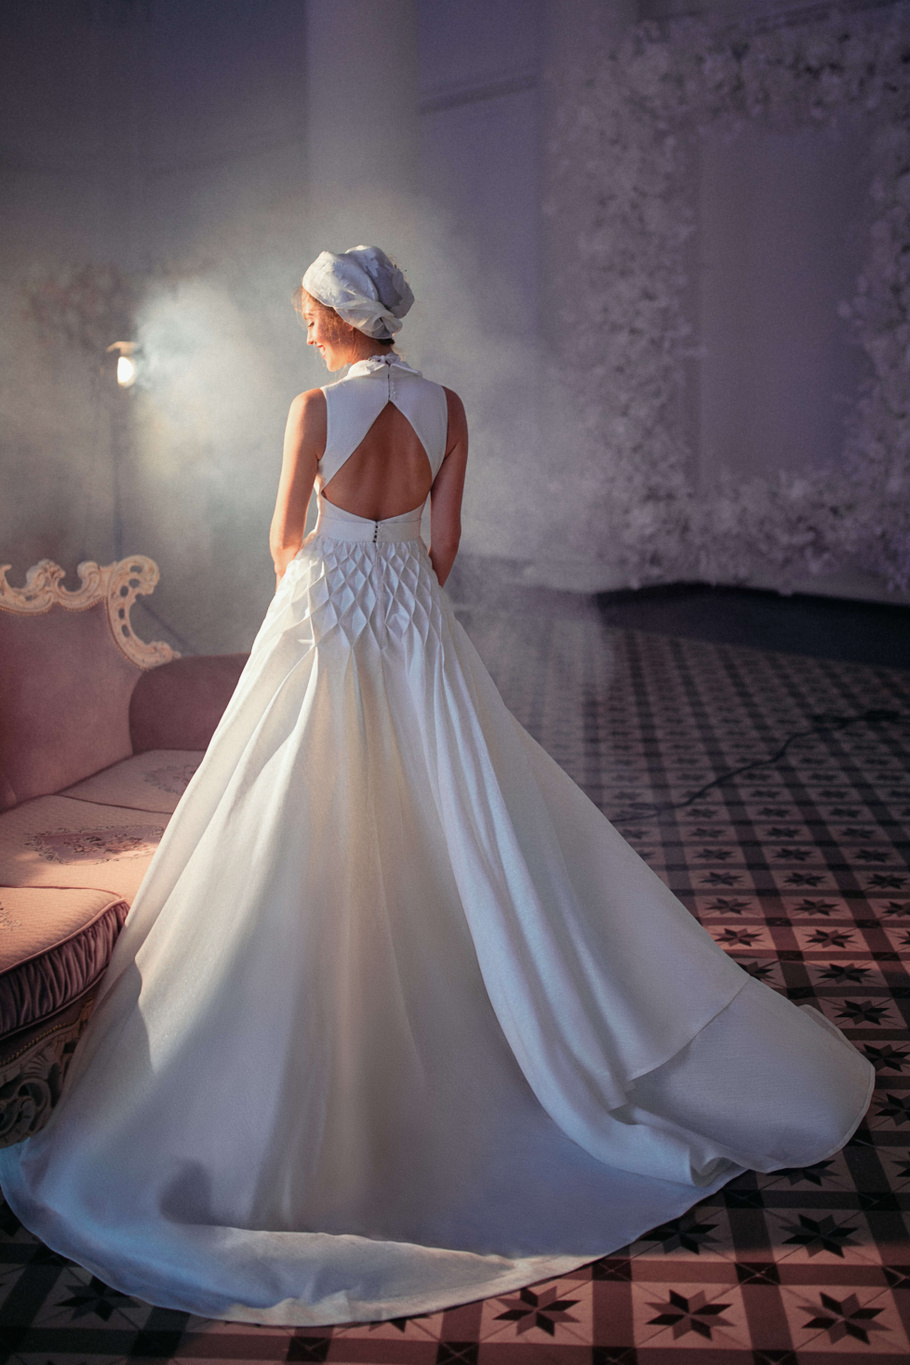 Купить свадебное платье «Астриа» Бламмо Биамо из коллекции Свит Лайф 2021 года в Екатеринбурге